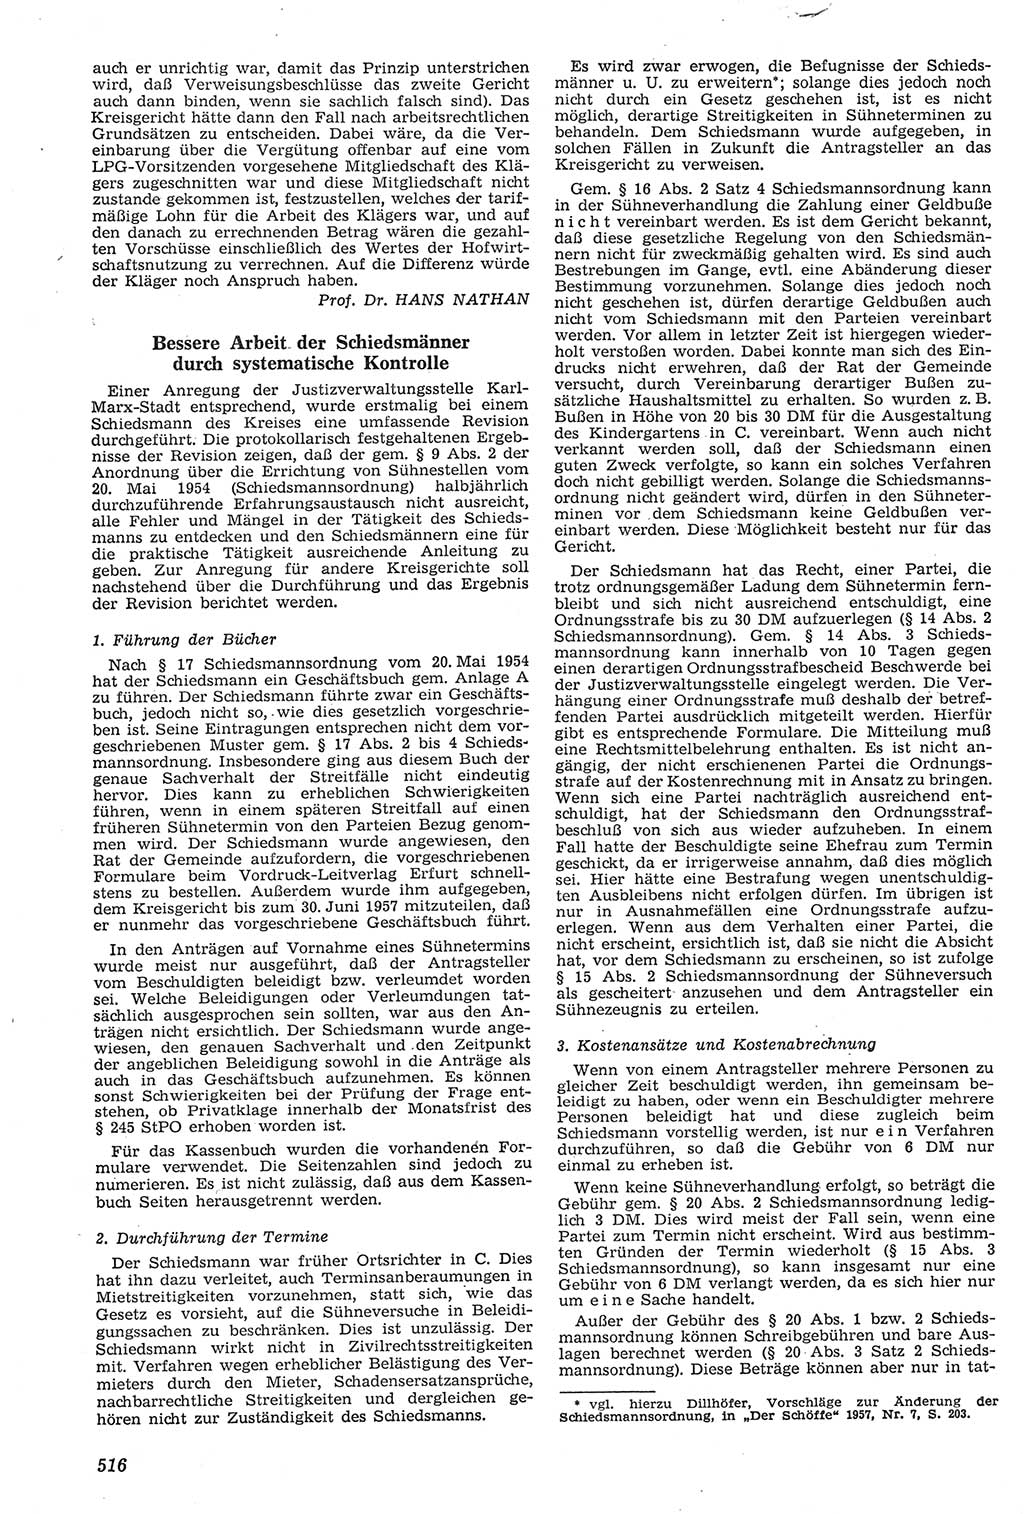 Neue Justiz (NJ), Zeitschrift für Recht und Rechtswissenschaft [Deutsche Demokratische Republik (DDR)], 11. Jahrgang 1957, Seite 516 (NJ DDR 1957, S. 516)